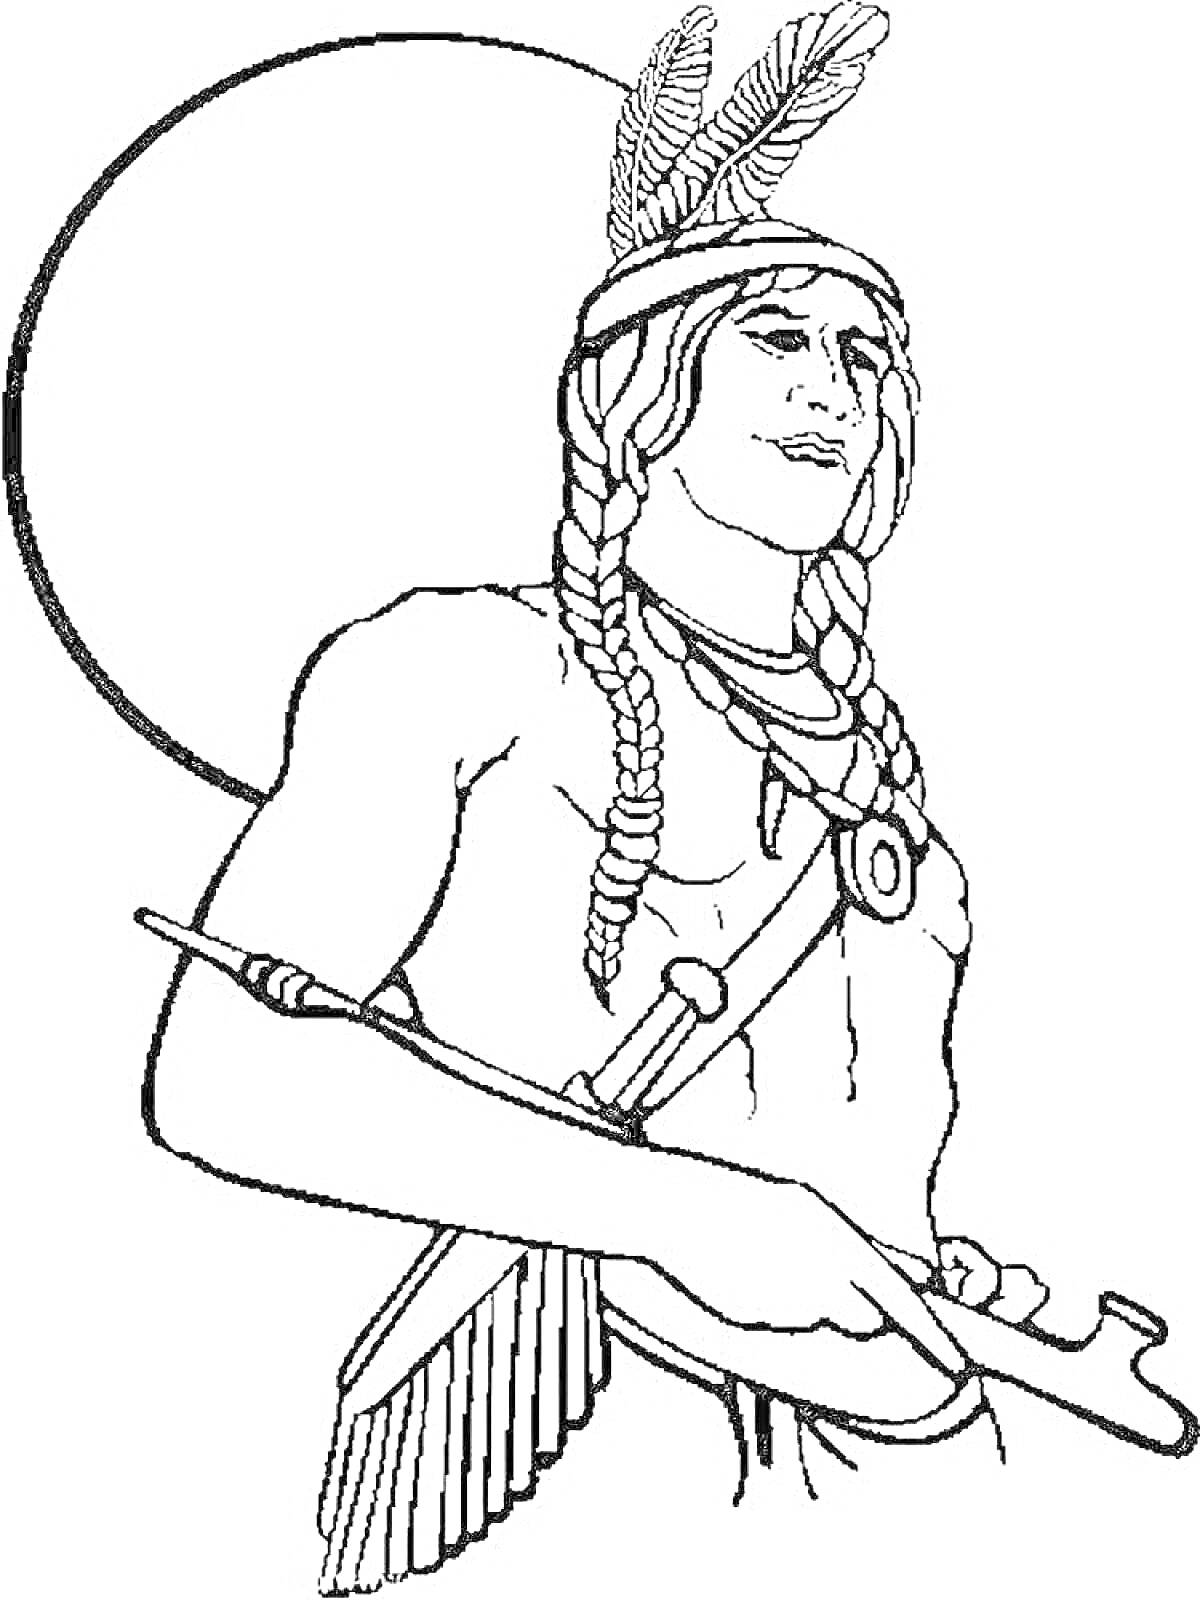 Раскраска Индейский воин с томагавком и перьями в волосах на фоне солнца